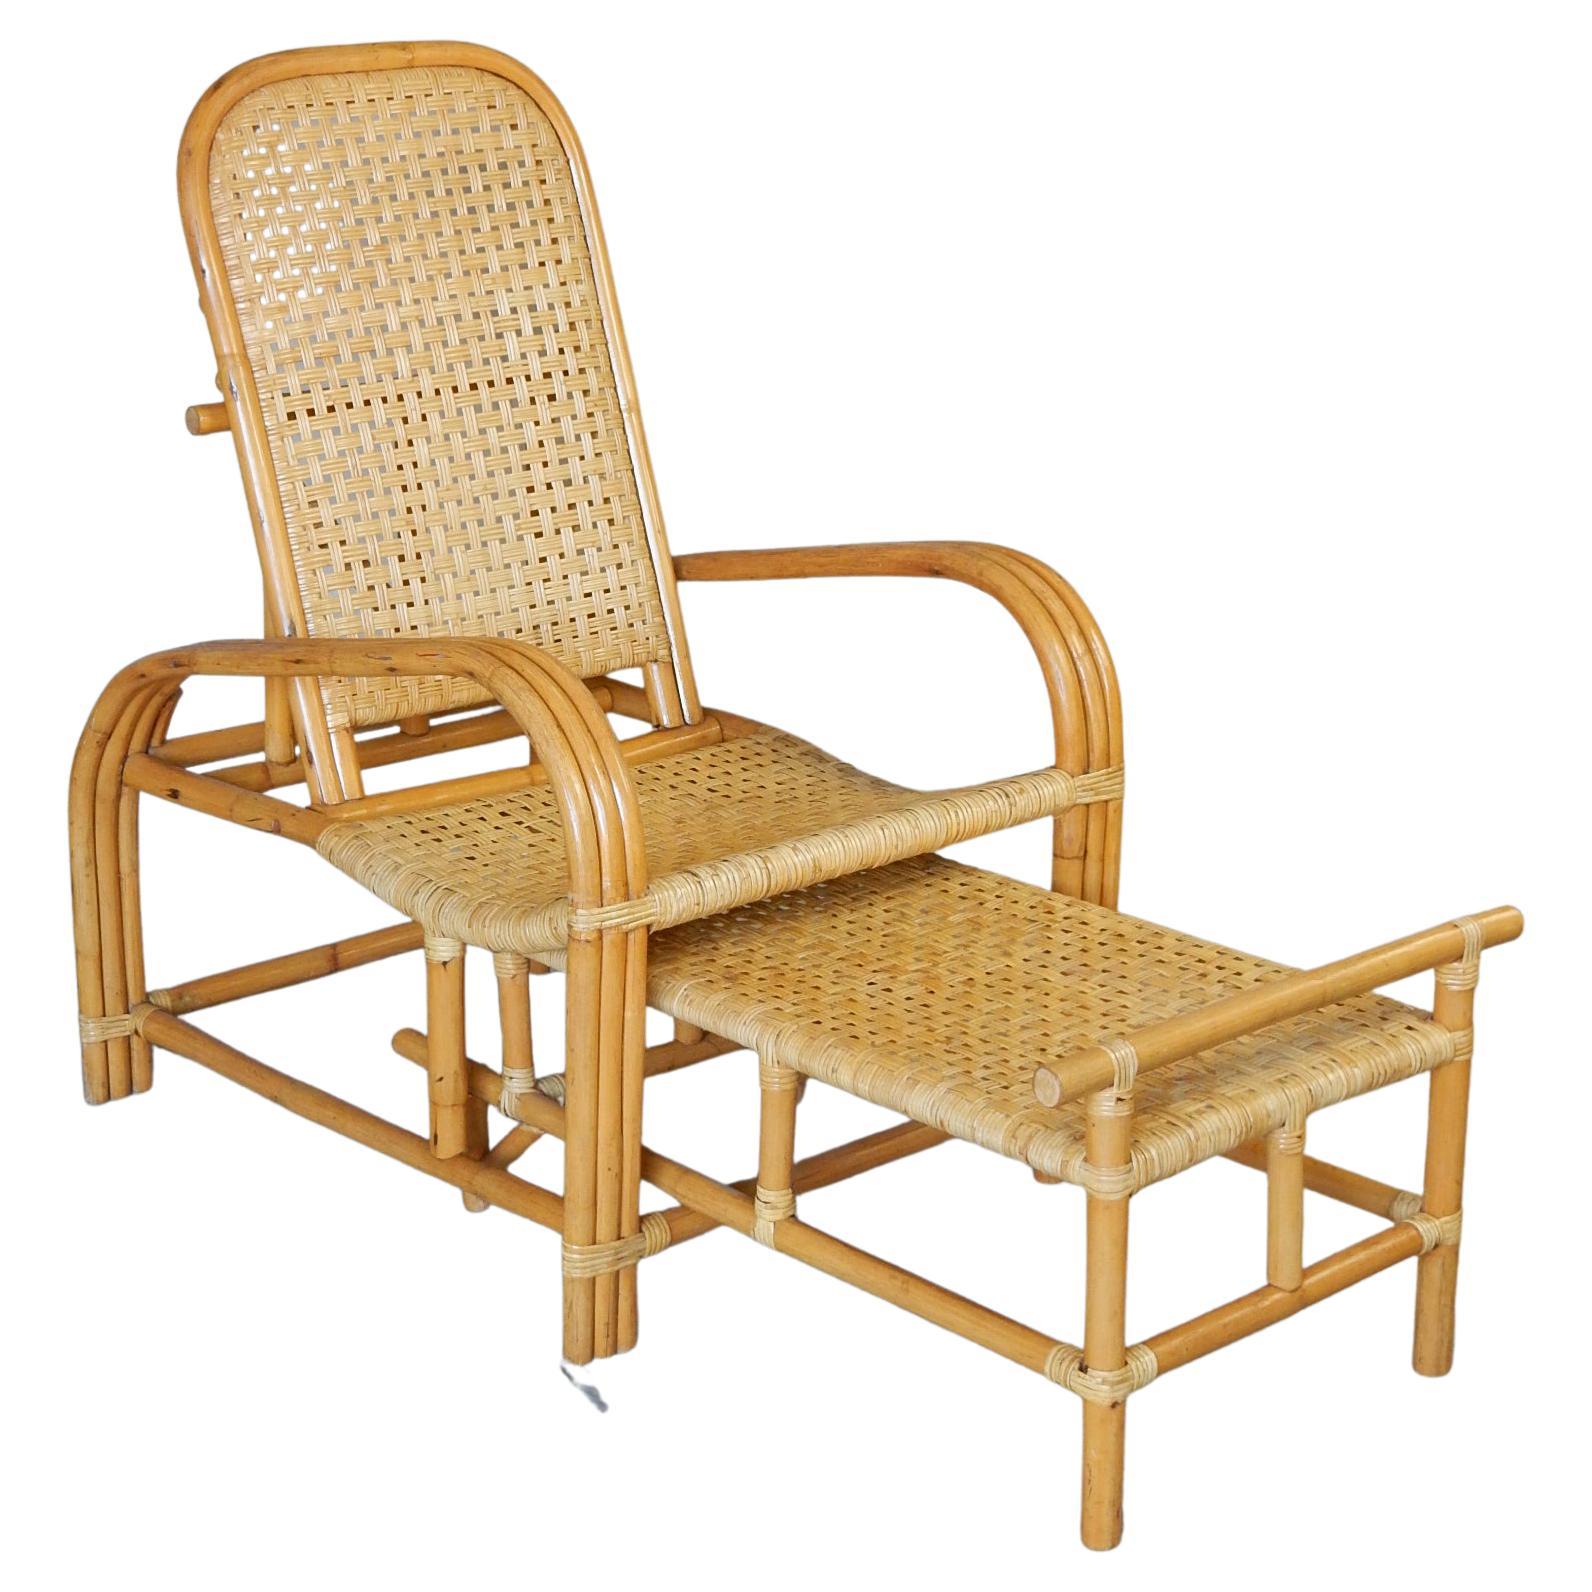 Sessel aus Rattan und geflochtenem Rohr, Paul Laszlo-Stil, 1950er Jahre